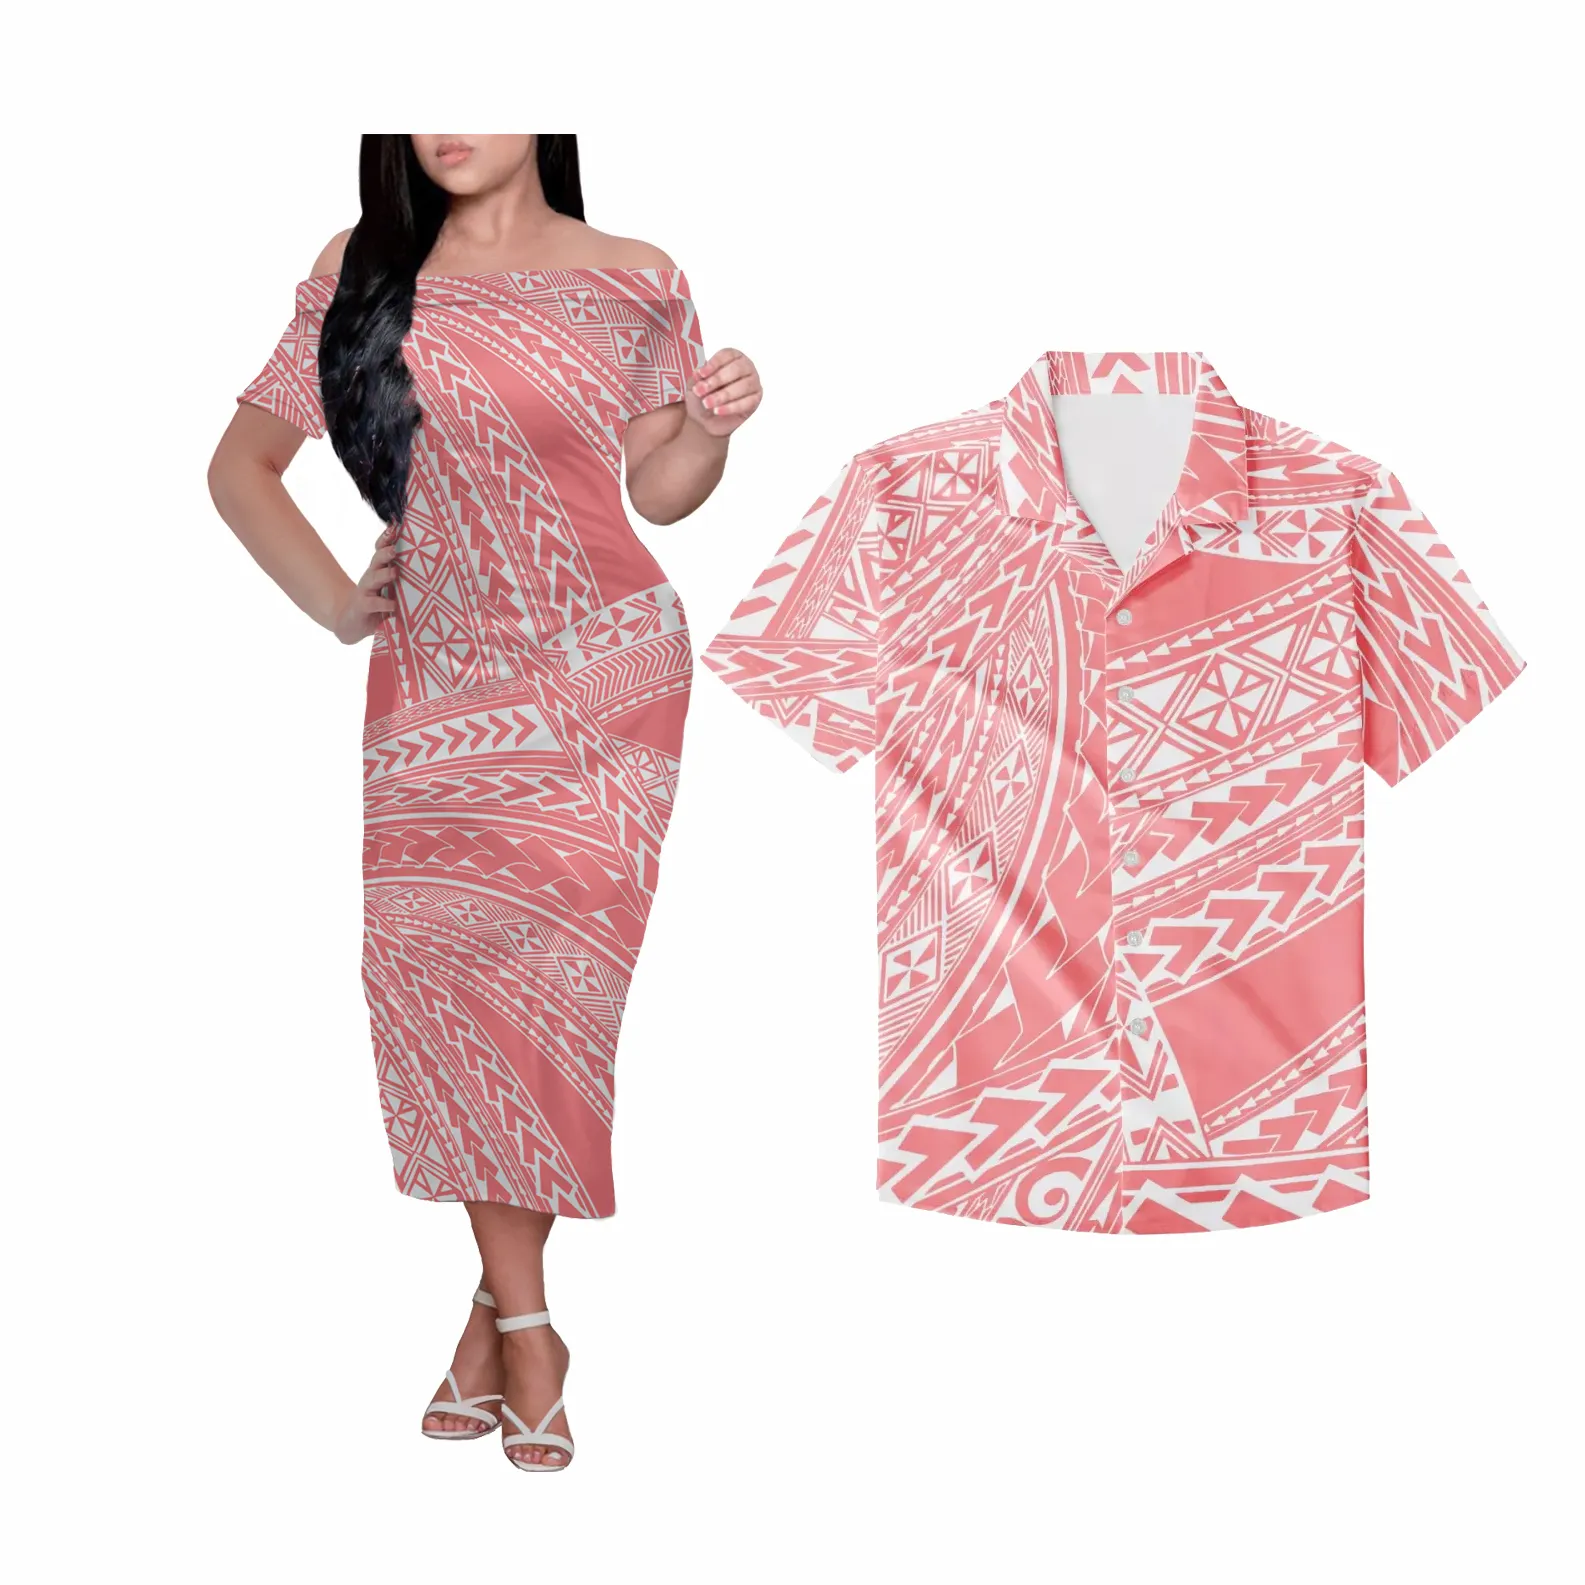 Di modo Etnico Triangolo Disegni Polinesiana Tribale Casual Vestito Delle Donne Manica Corta Camicia Degli Uomini Coppie Gli Amanti Dei Vestiti di Vestito Su Misura